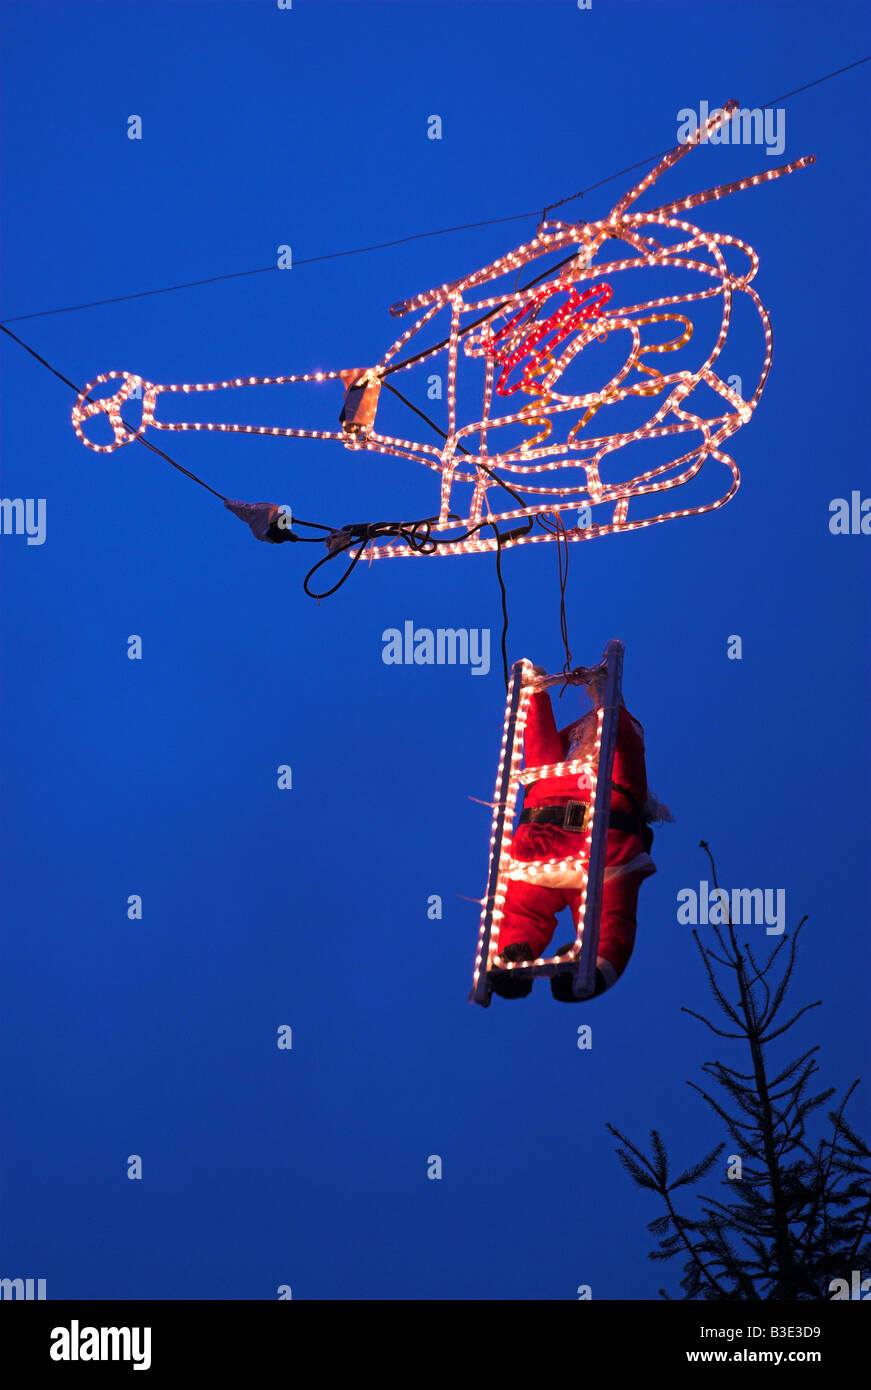 Ariel Vue de nuit allumé en hélicoptère et Santa Clause de grimper à bord de traîneau Banque D'Images